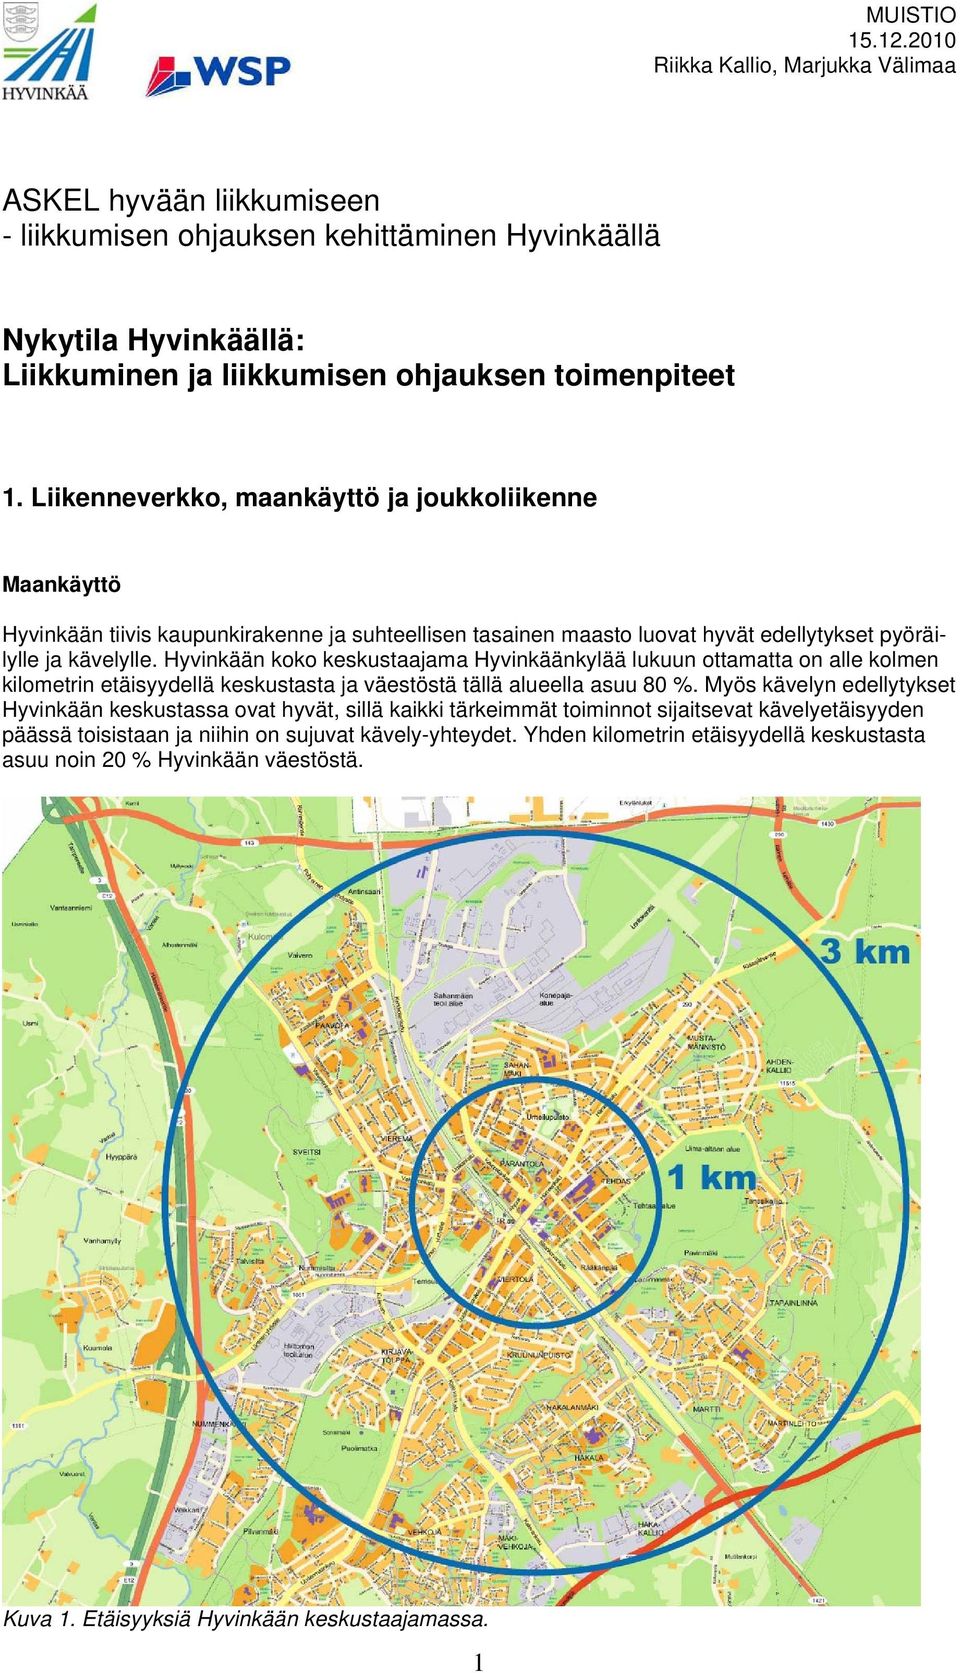 Hyvinkään koko keskustaajama Hyvinkäänkylää lukuun ottamatta on alle kolmen kilometrin etäisyydellä keskustasta ja väestöstä tällä alueella asuu 80 %.